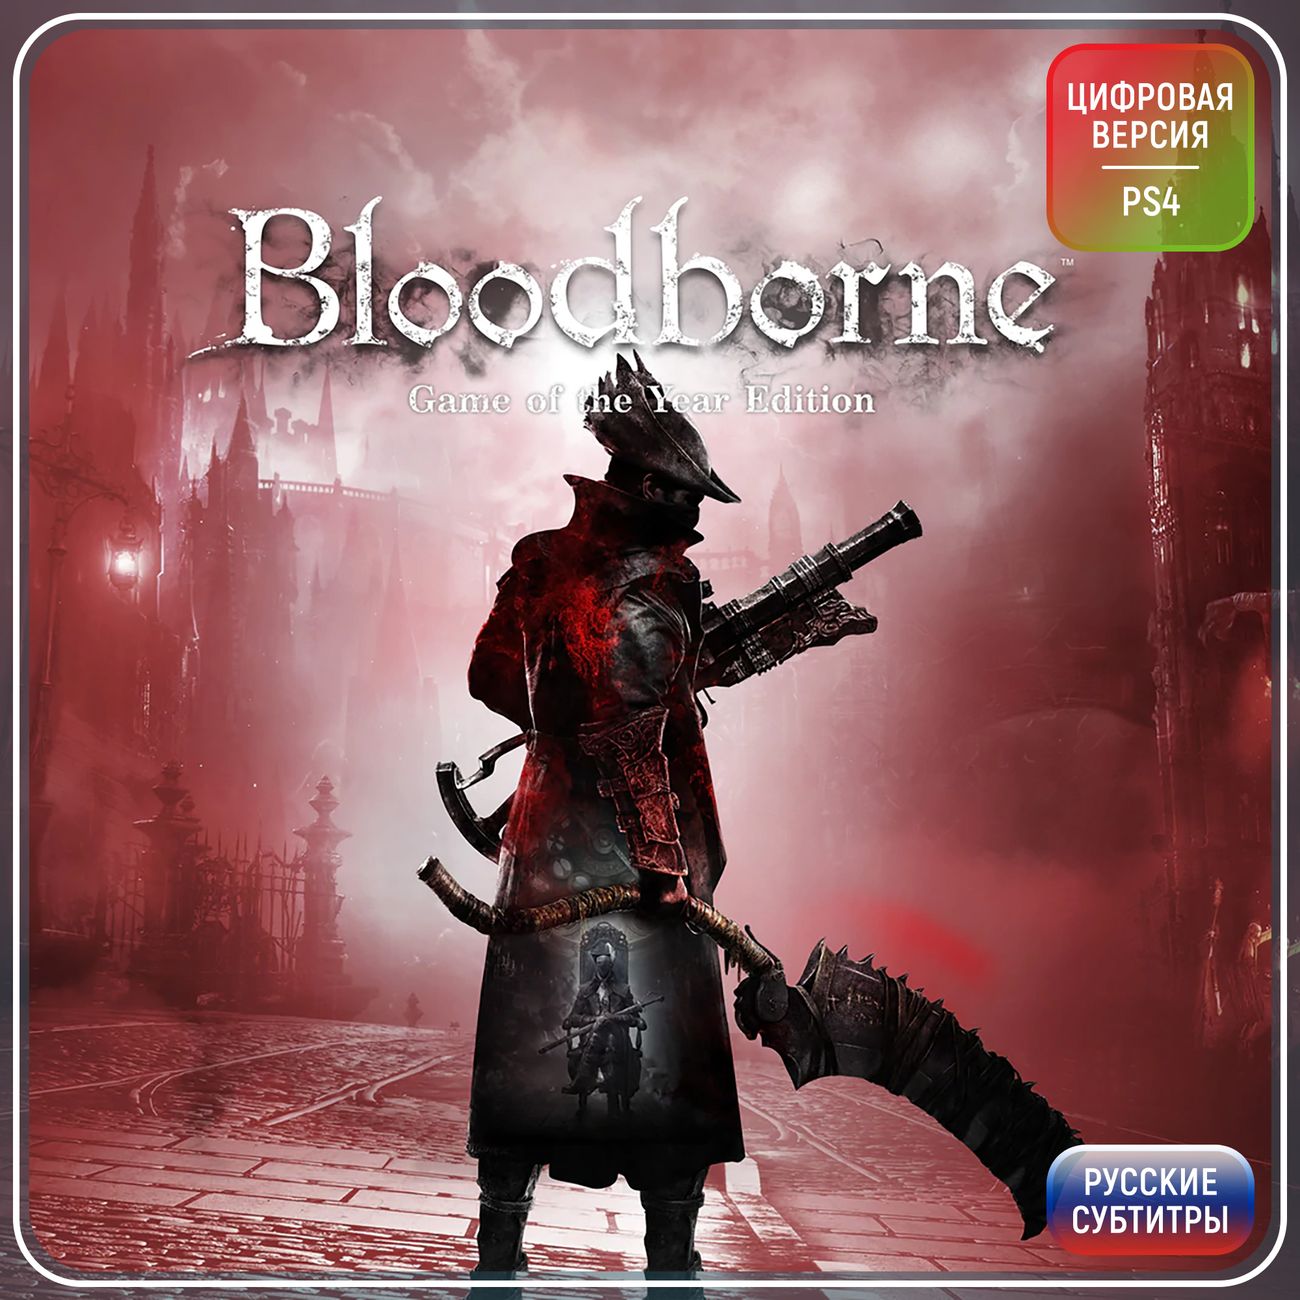 Bloodborne купить ps4. Bloodborne ps4. Bloodborne пс4. Ps4 Bloodborne Edition. Bloodborne GOTY ps4.